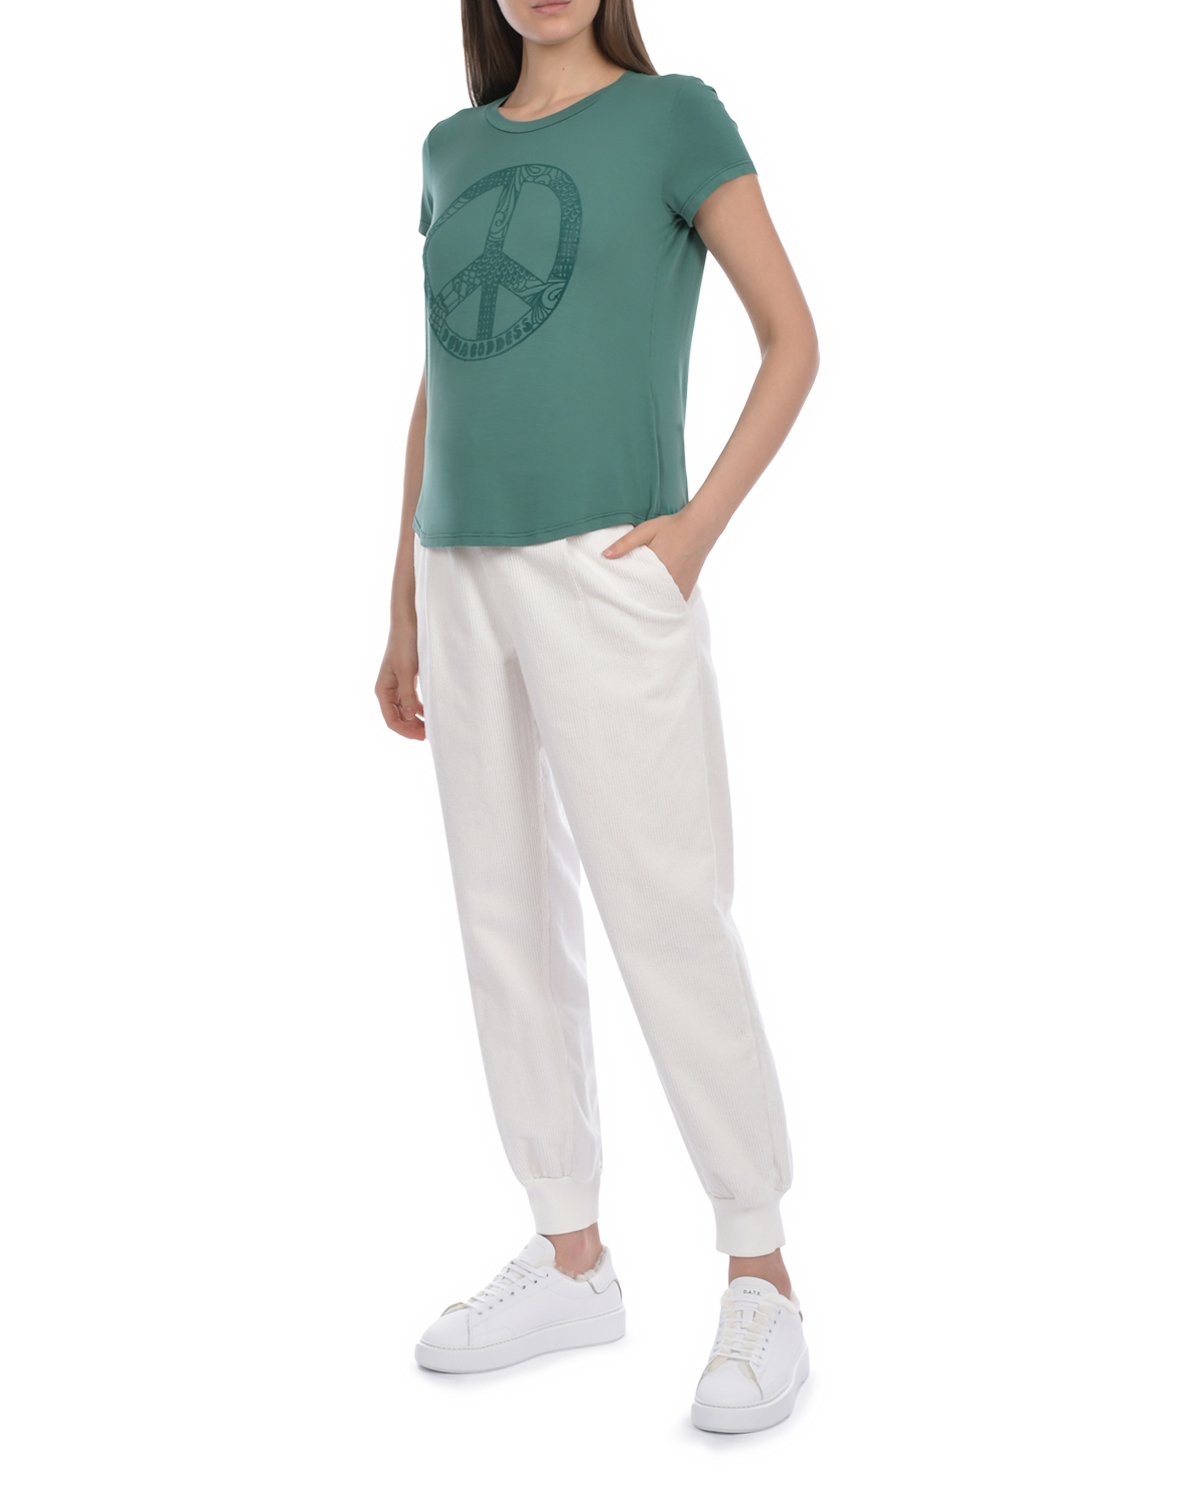 Зеленая футболка с принтом "Pacific" Deha, размер 40, цвет зеленый - фото 5